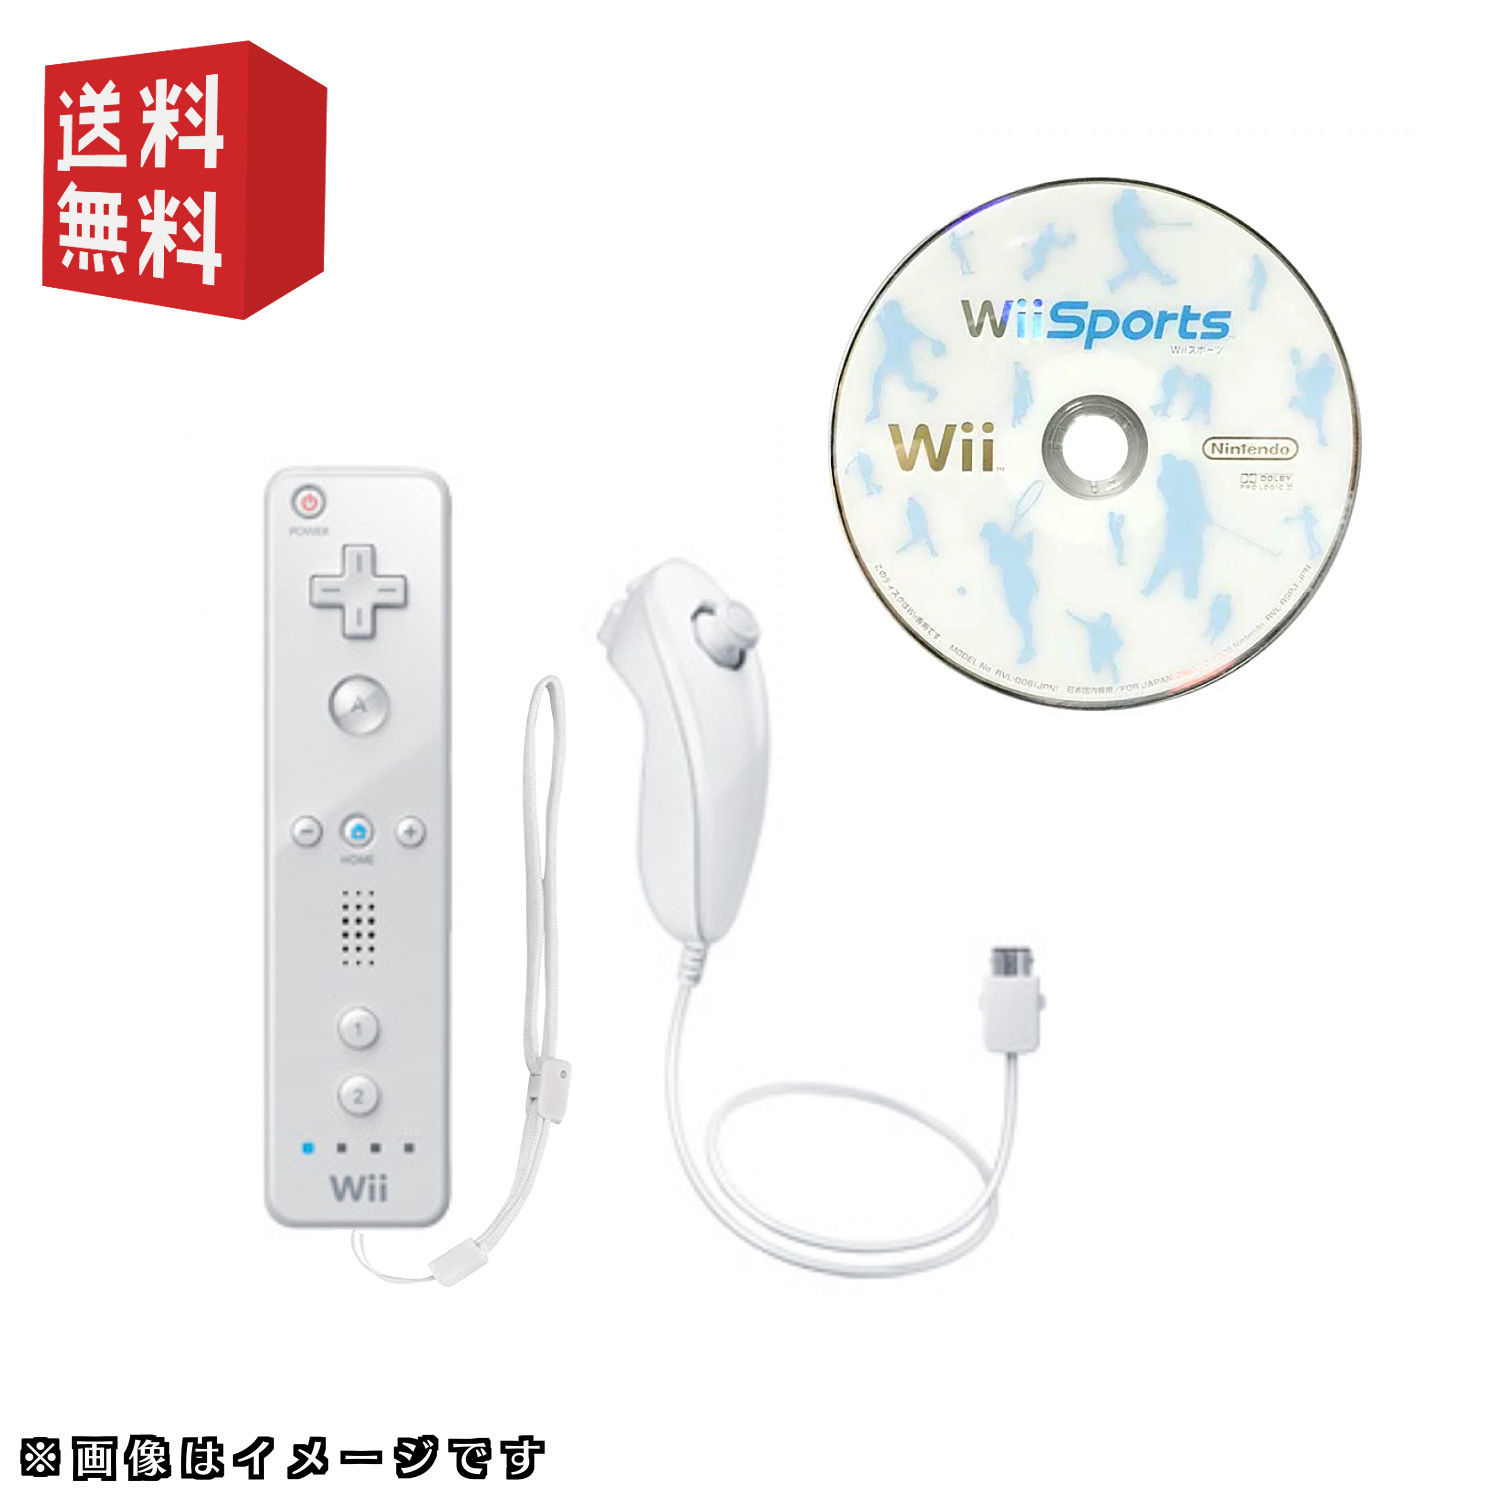 返品送料無料 家庭用ゲーム本体 Wii Nintendo Wii Wii リモコン 